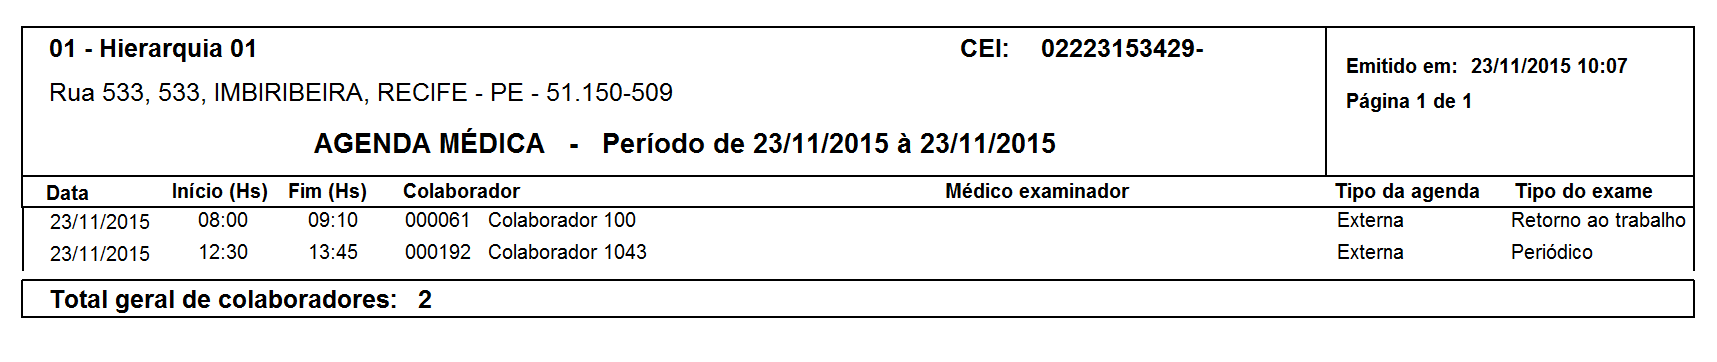 manual_usuario:smt:smt_relatorio_relacao_agenda_medica_2.png